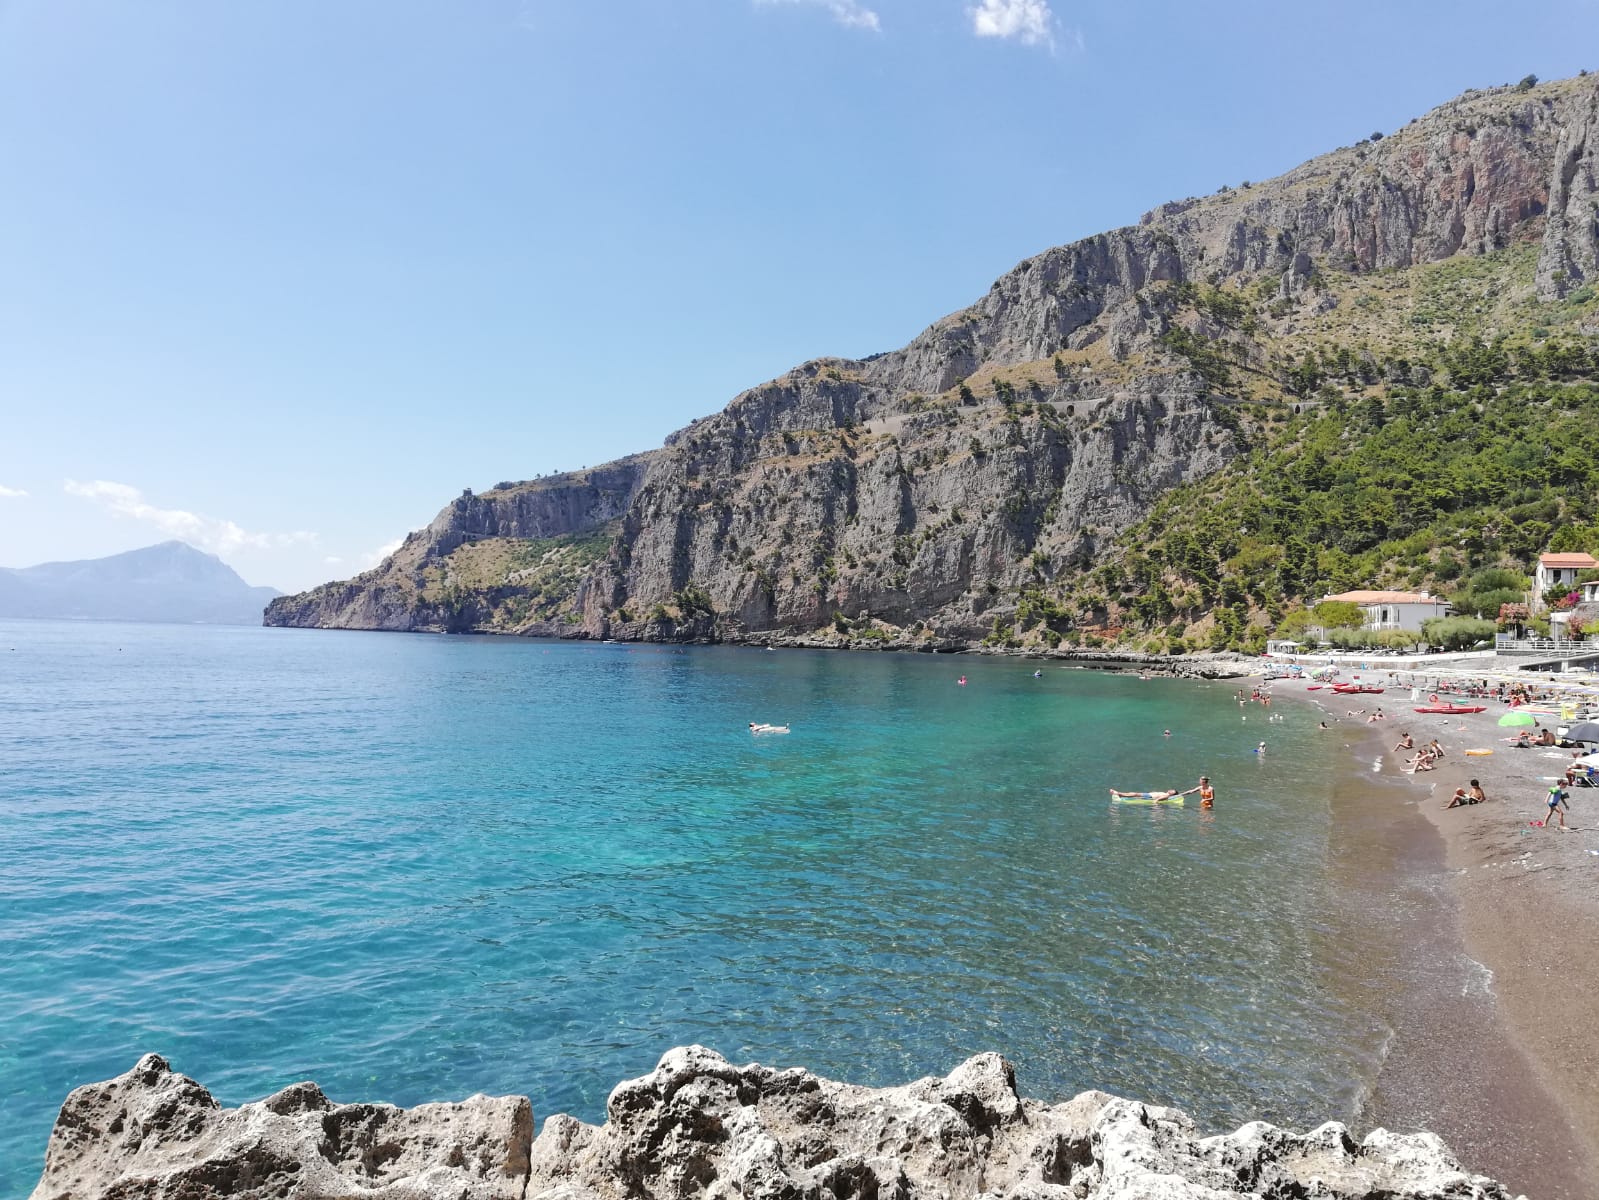 Photo of Spiaggia Acquafredda located in natural area